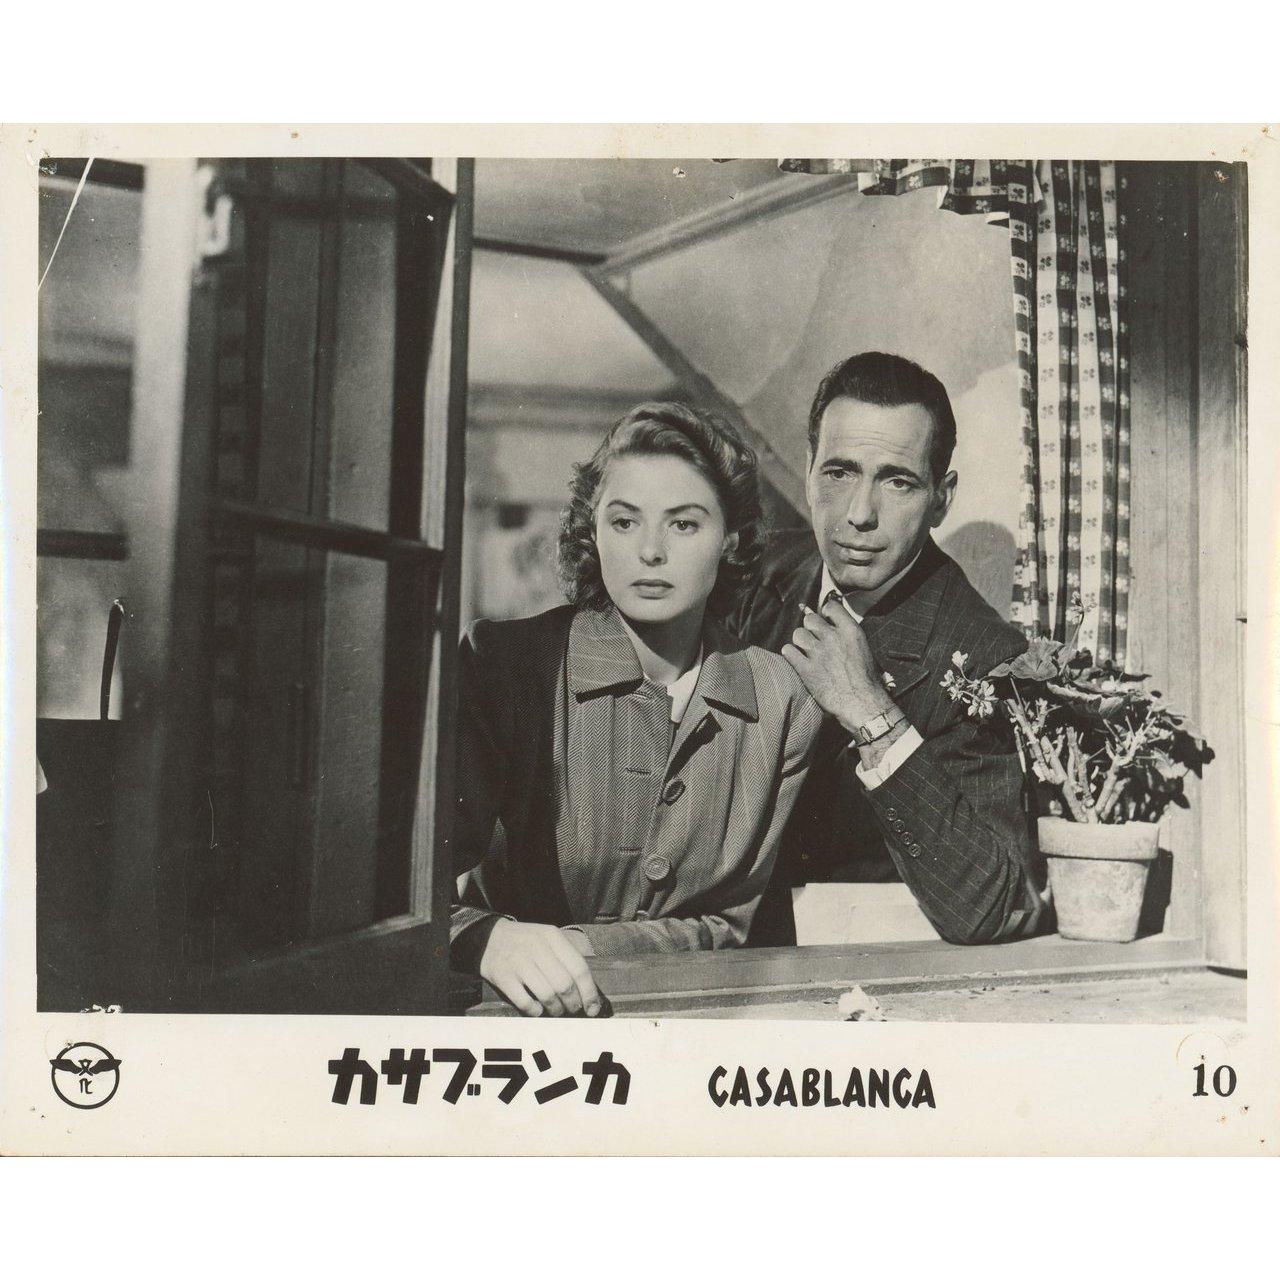 Photo originale japonaise à gélatine argentique de 1962 pour le film Casablanca (1942) réalisé par Michael Curtiz avec Humphrey Bogart / Ingrid Bergman / Paul Henreid / Claude Rains. Très bon état, trous d'épingle. Veuillez noter que la taille est